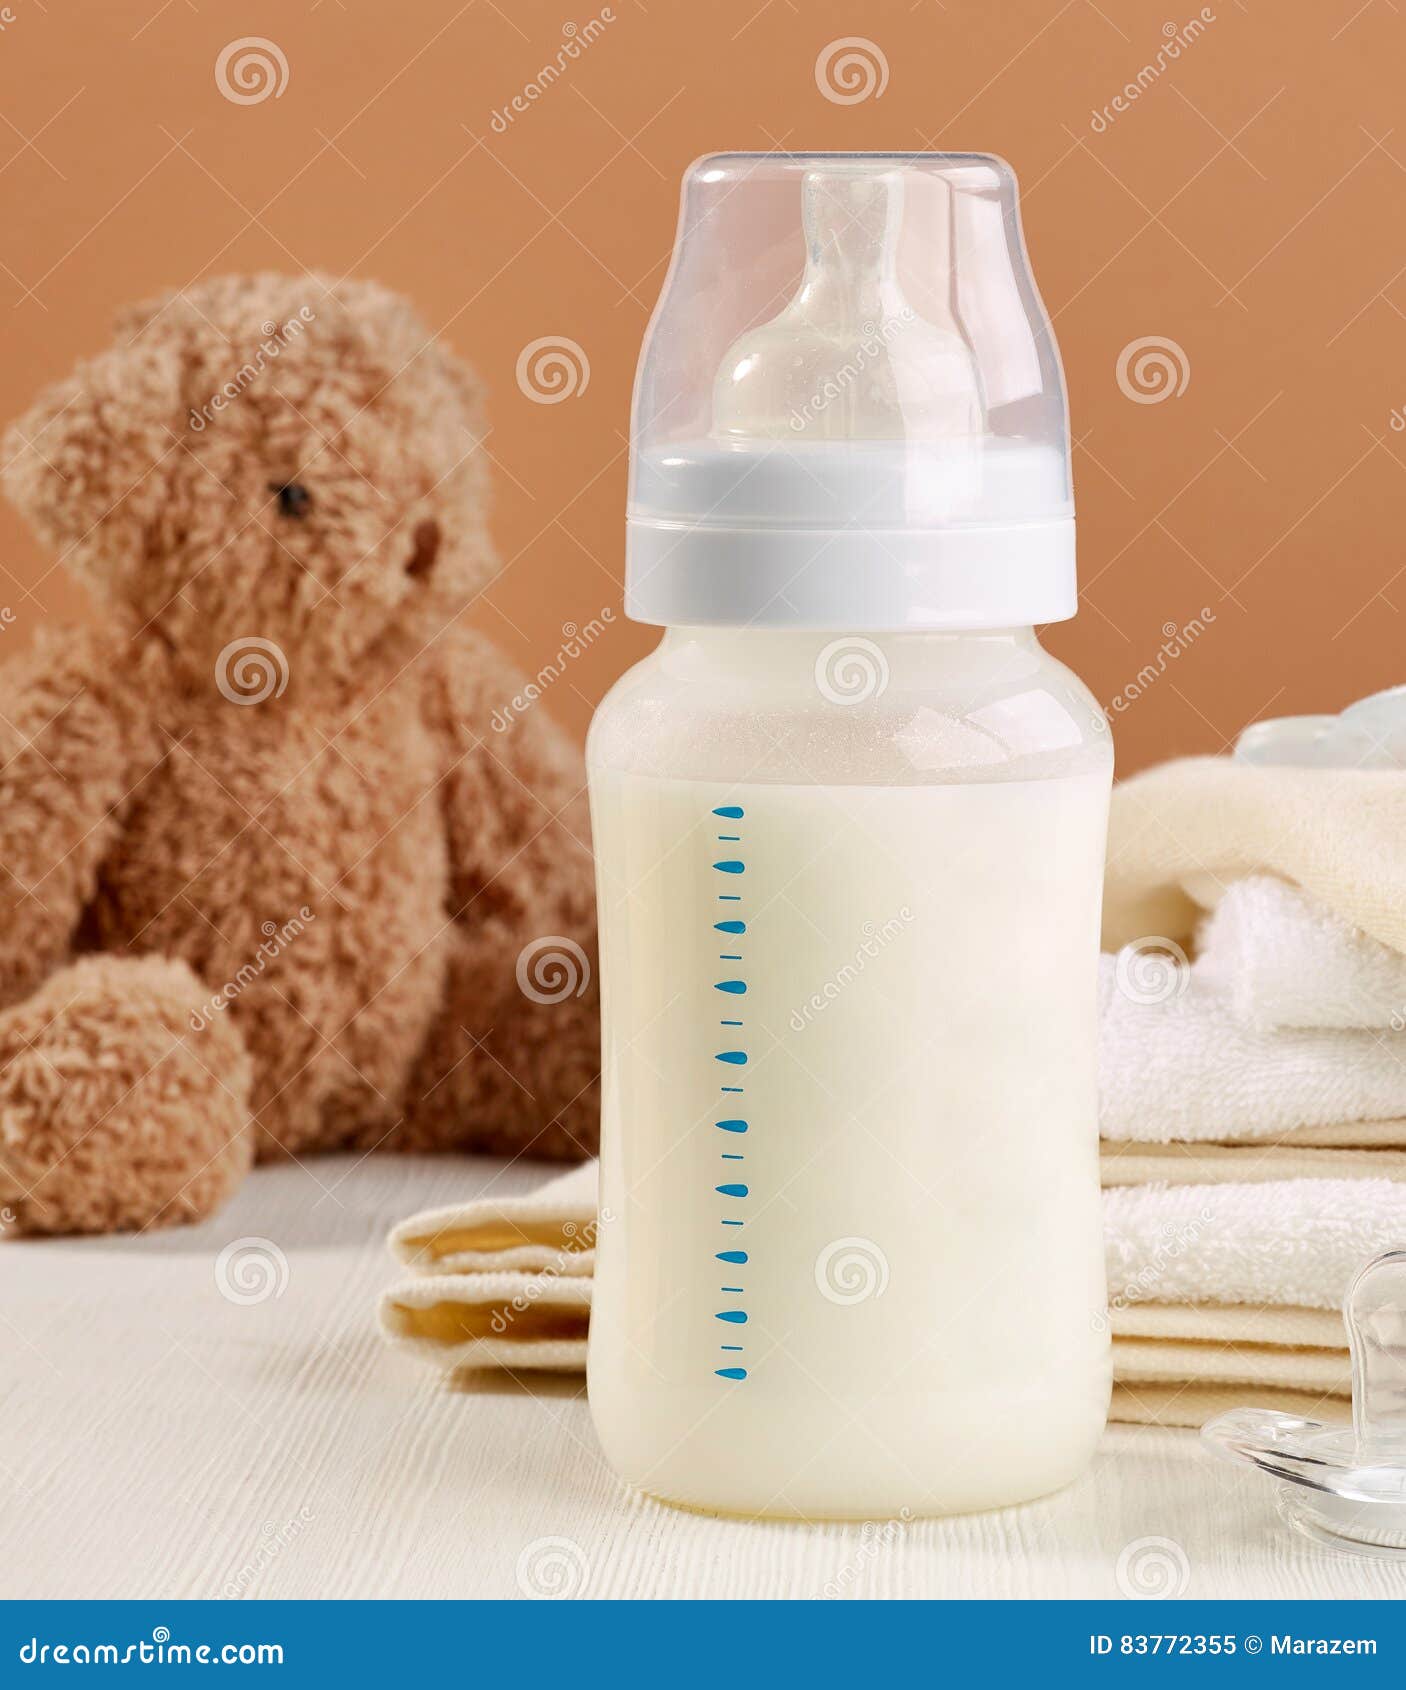 Koken erfgoed zacht De melkfles van de baby stock afbeelding. Image of baby - 83772355